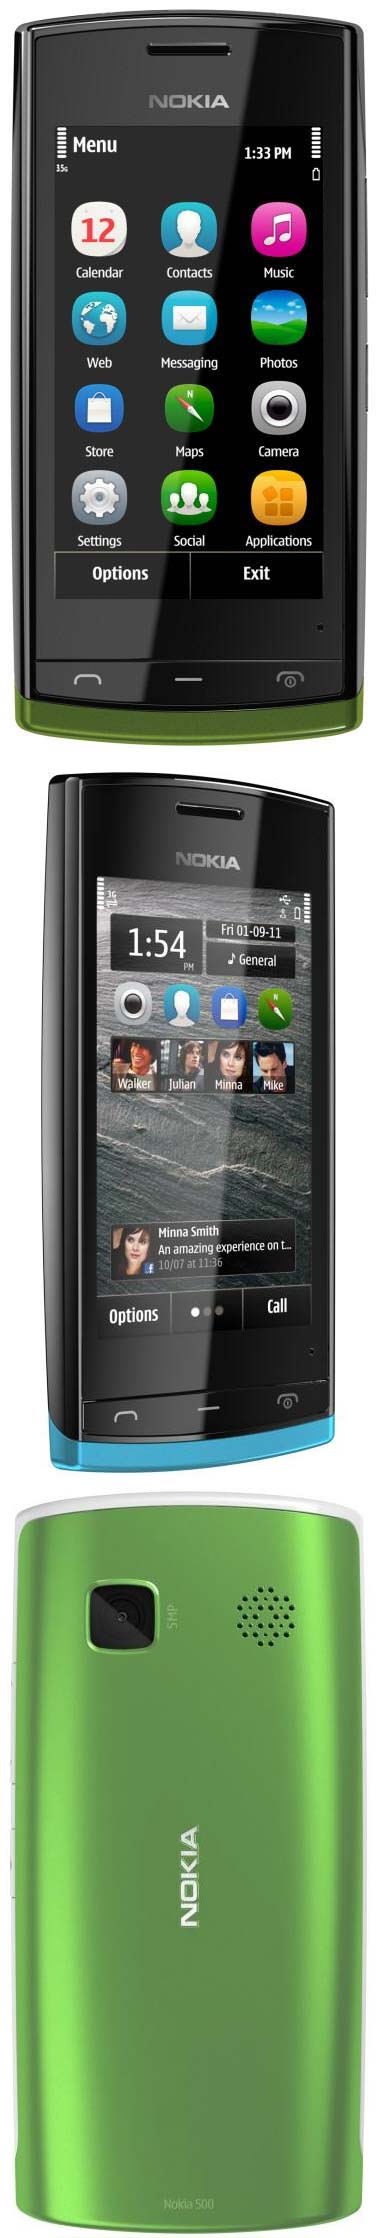 Nokia 500 - новый финский смартфон